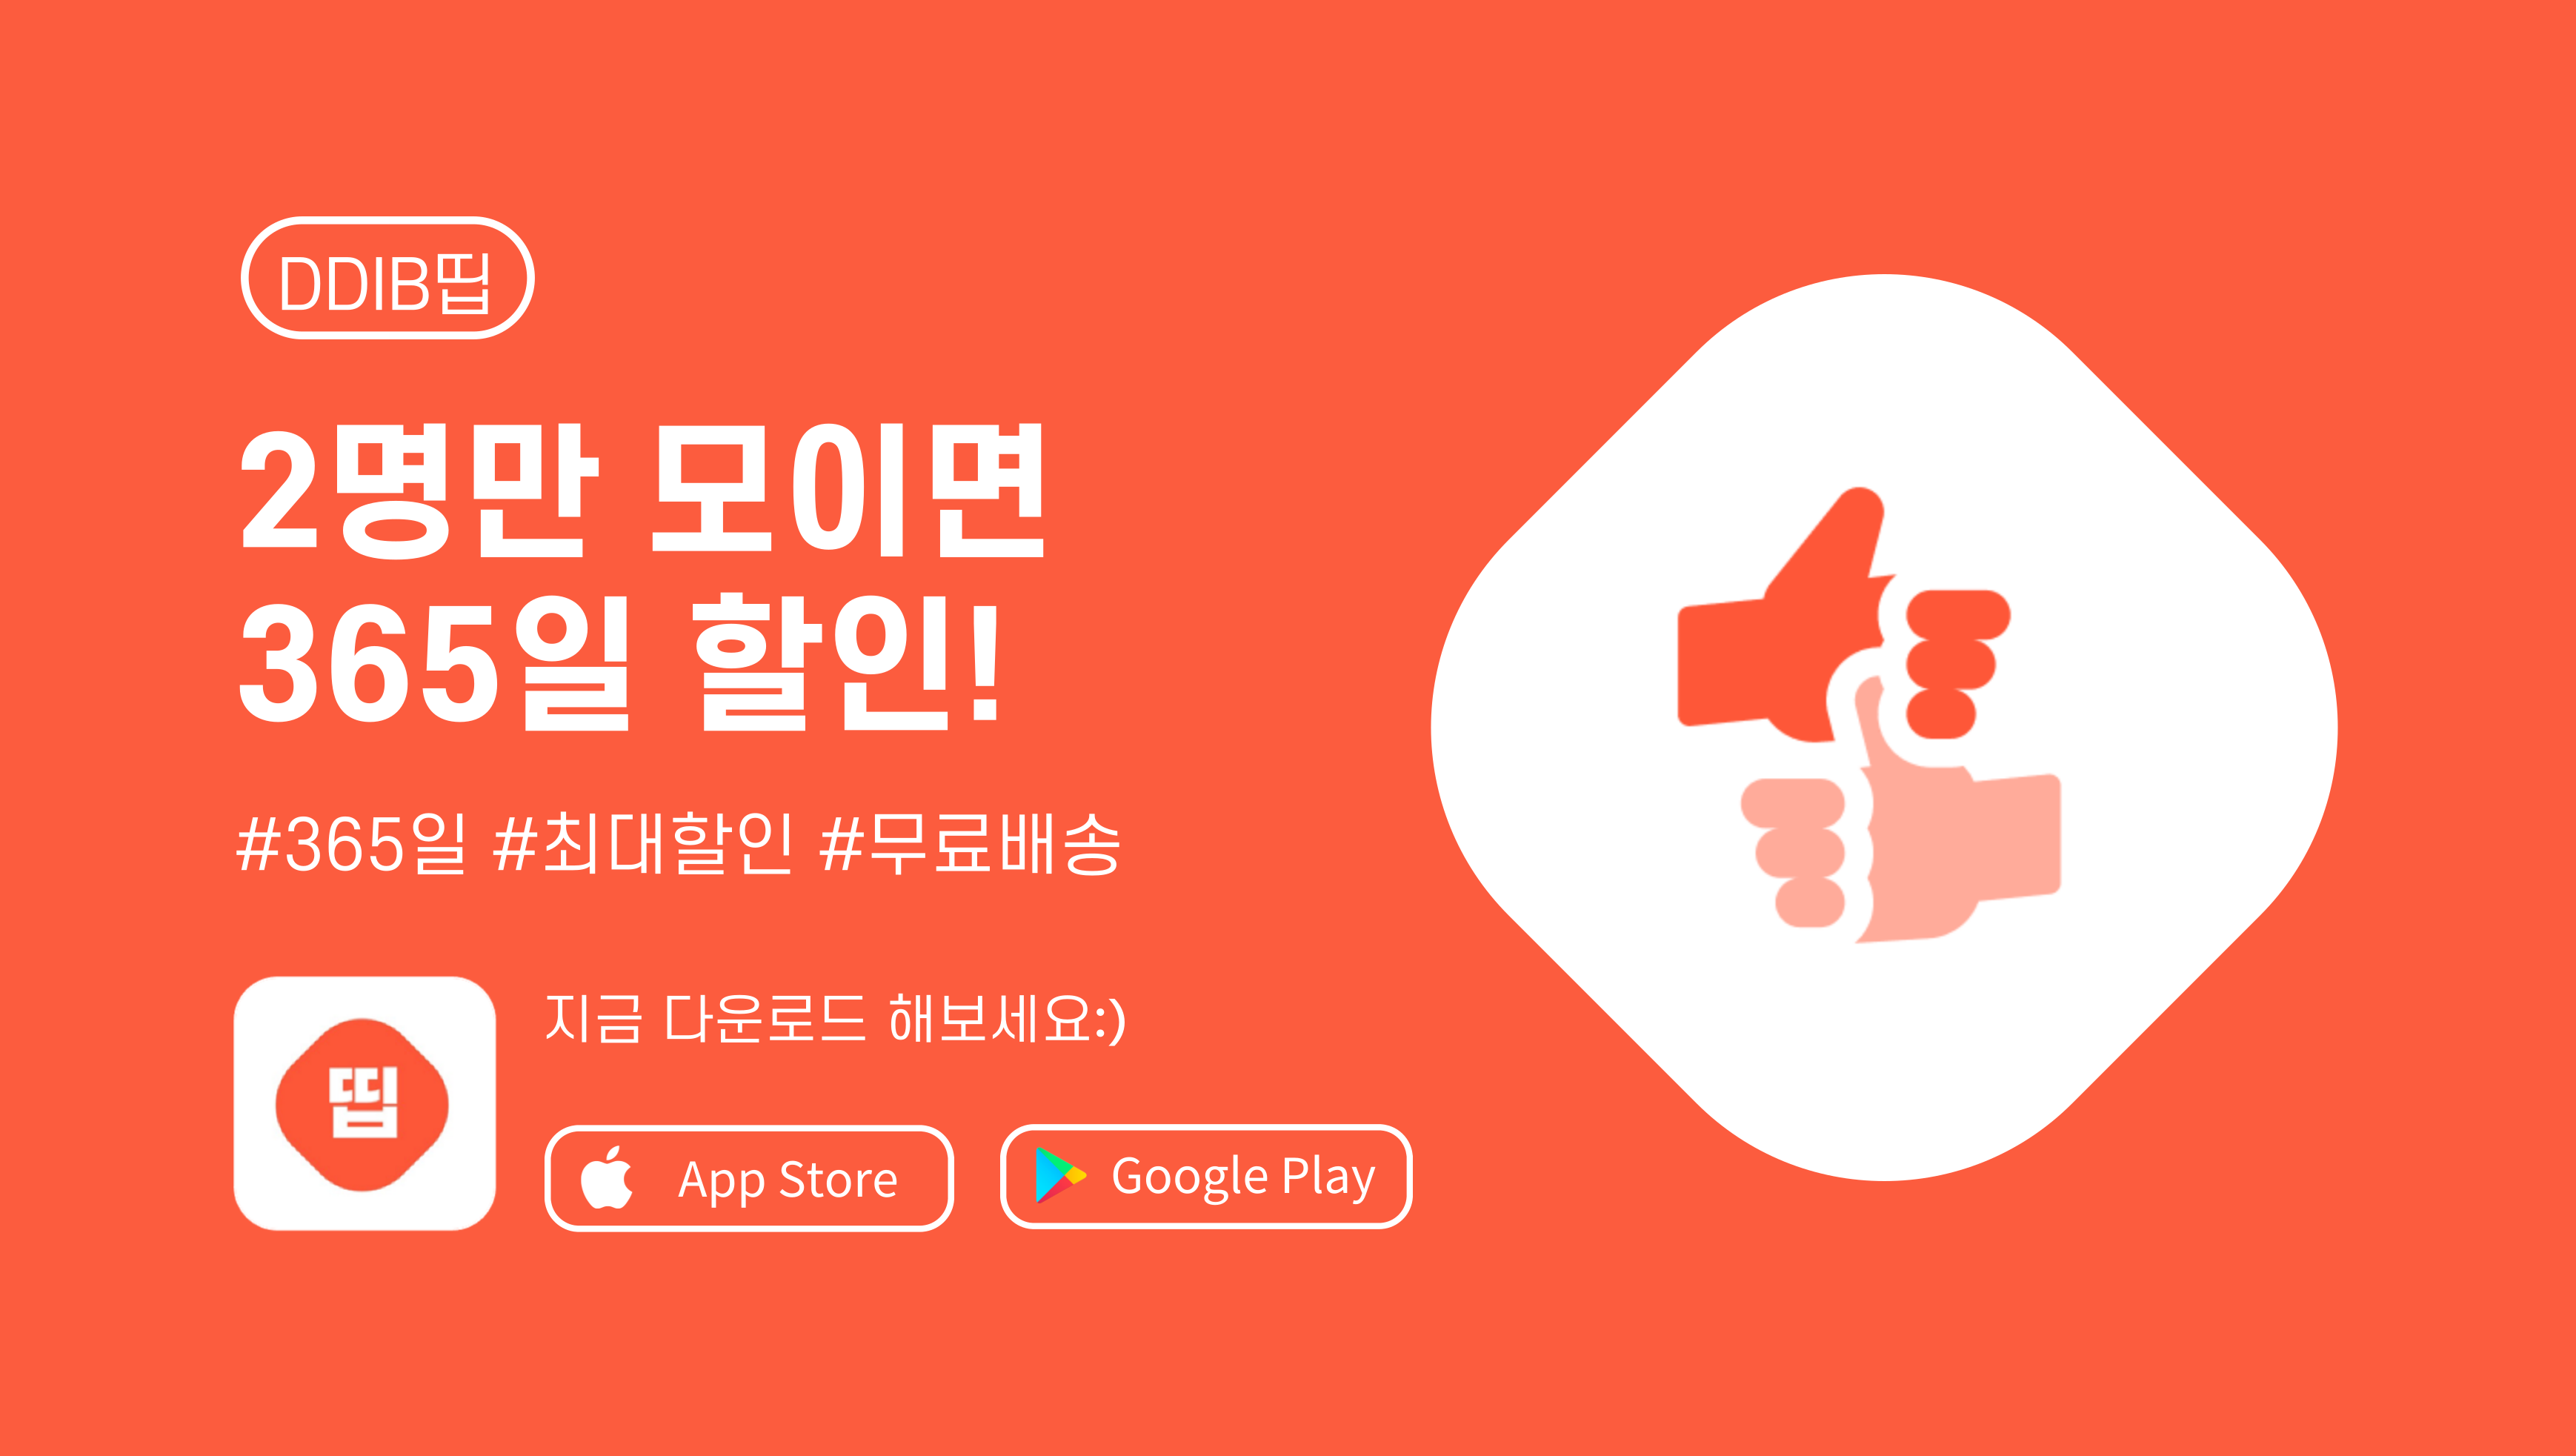 2인 공동구매 쇼핑 앱 'DDIB띱’ 스트롱벤처스 투자 유치